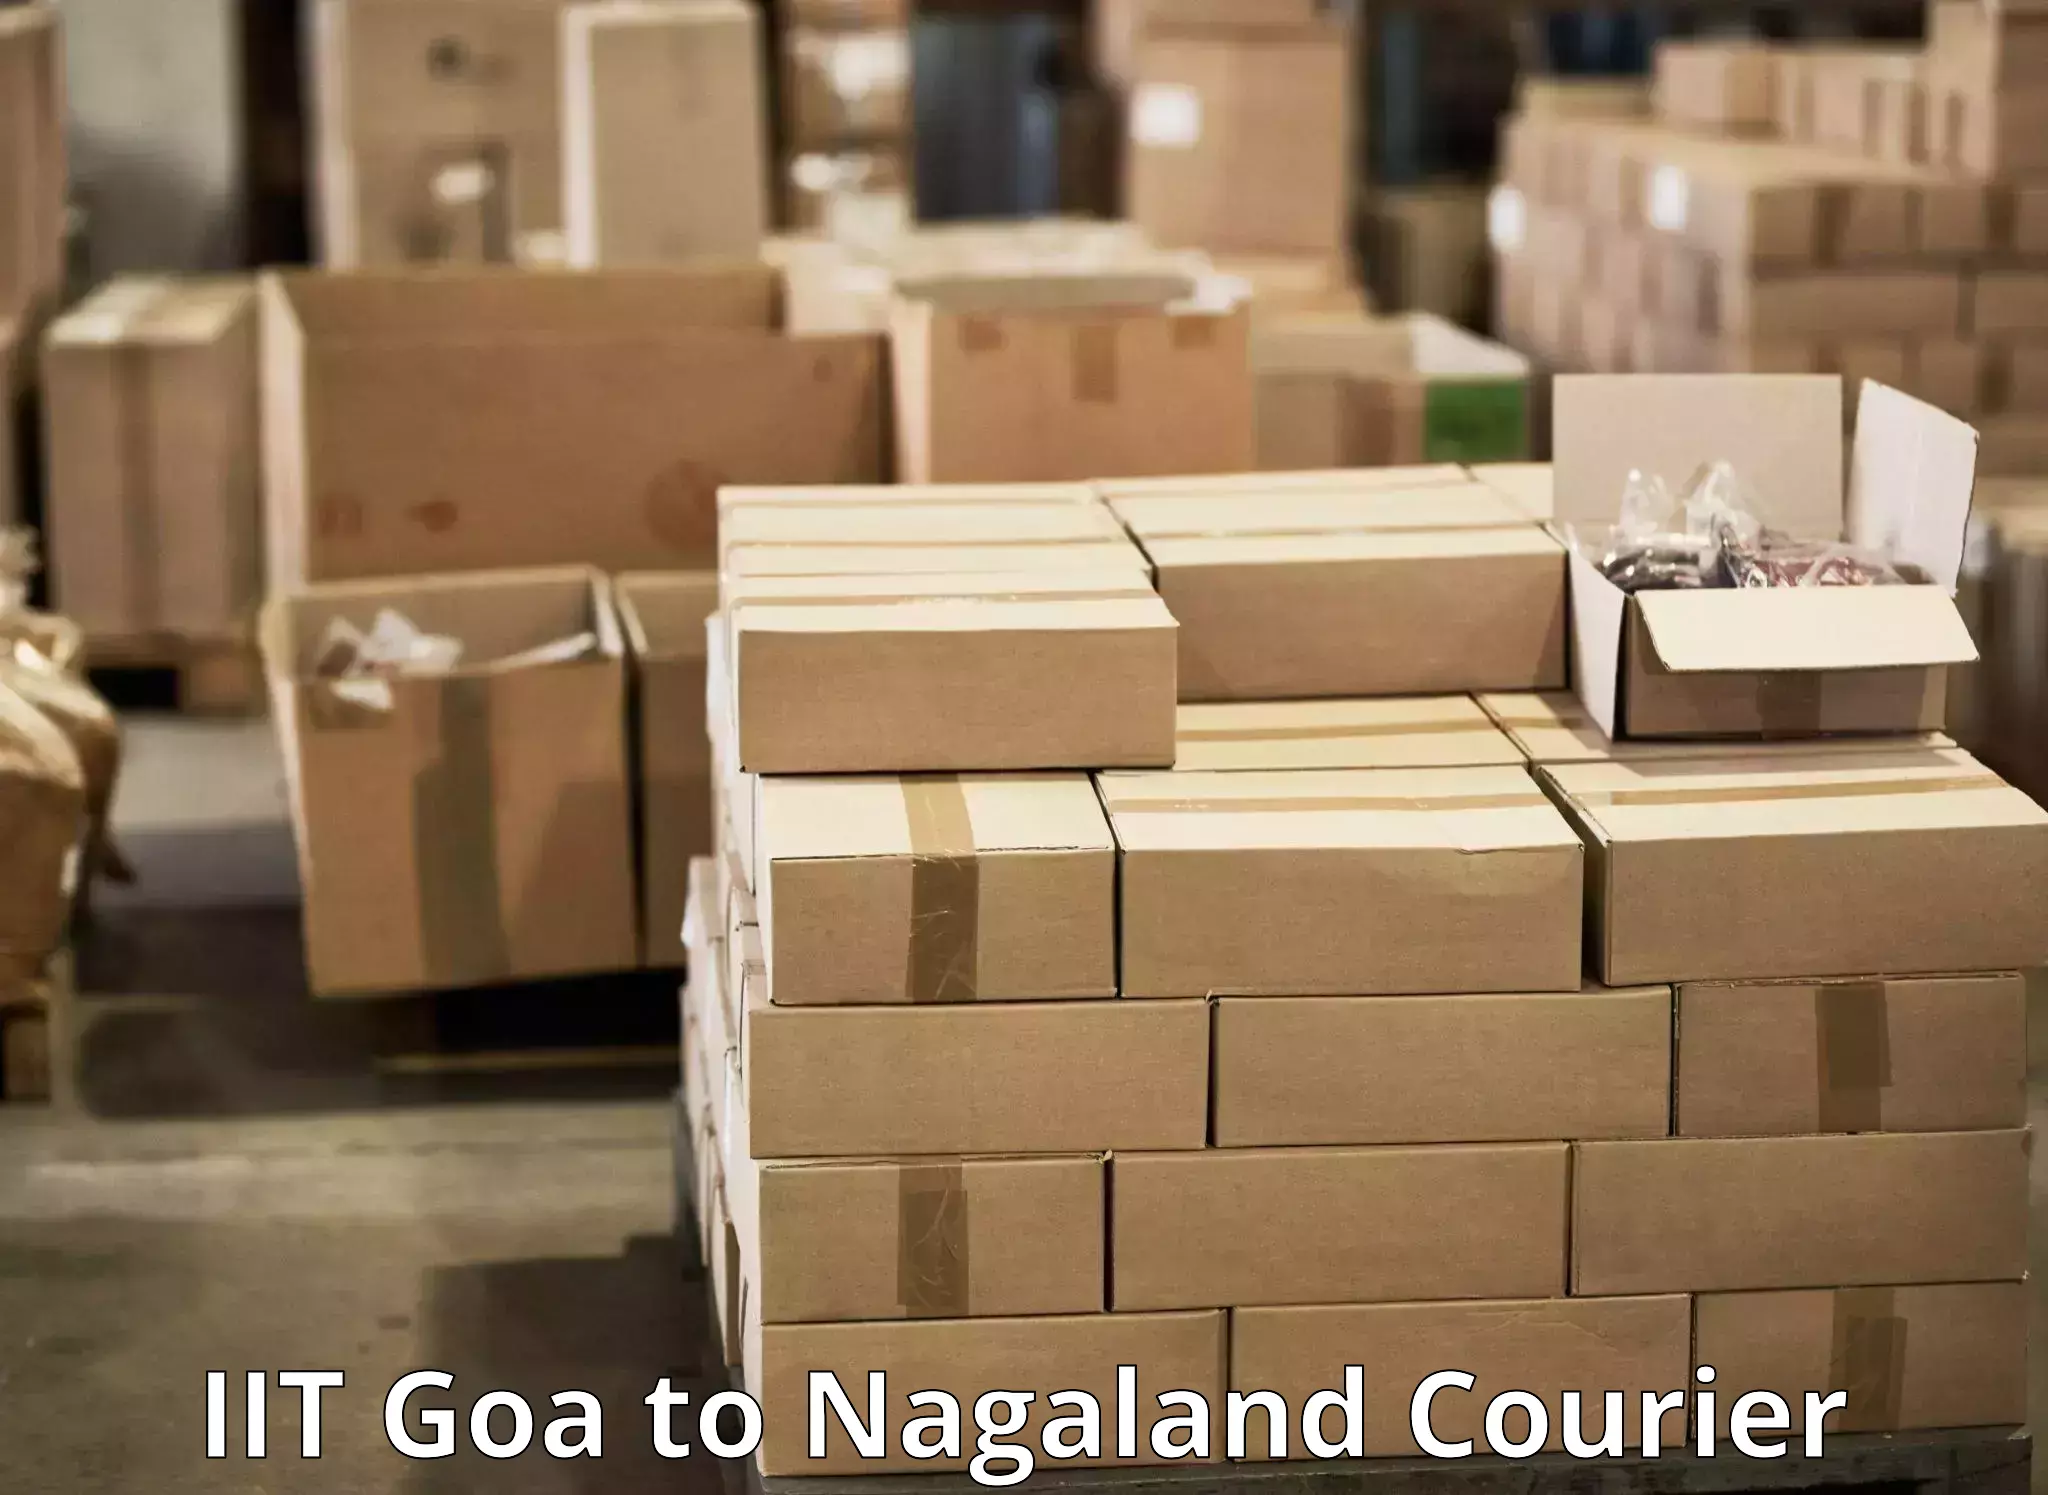 Door-to-door freight service IIT Goa to Kohima